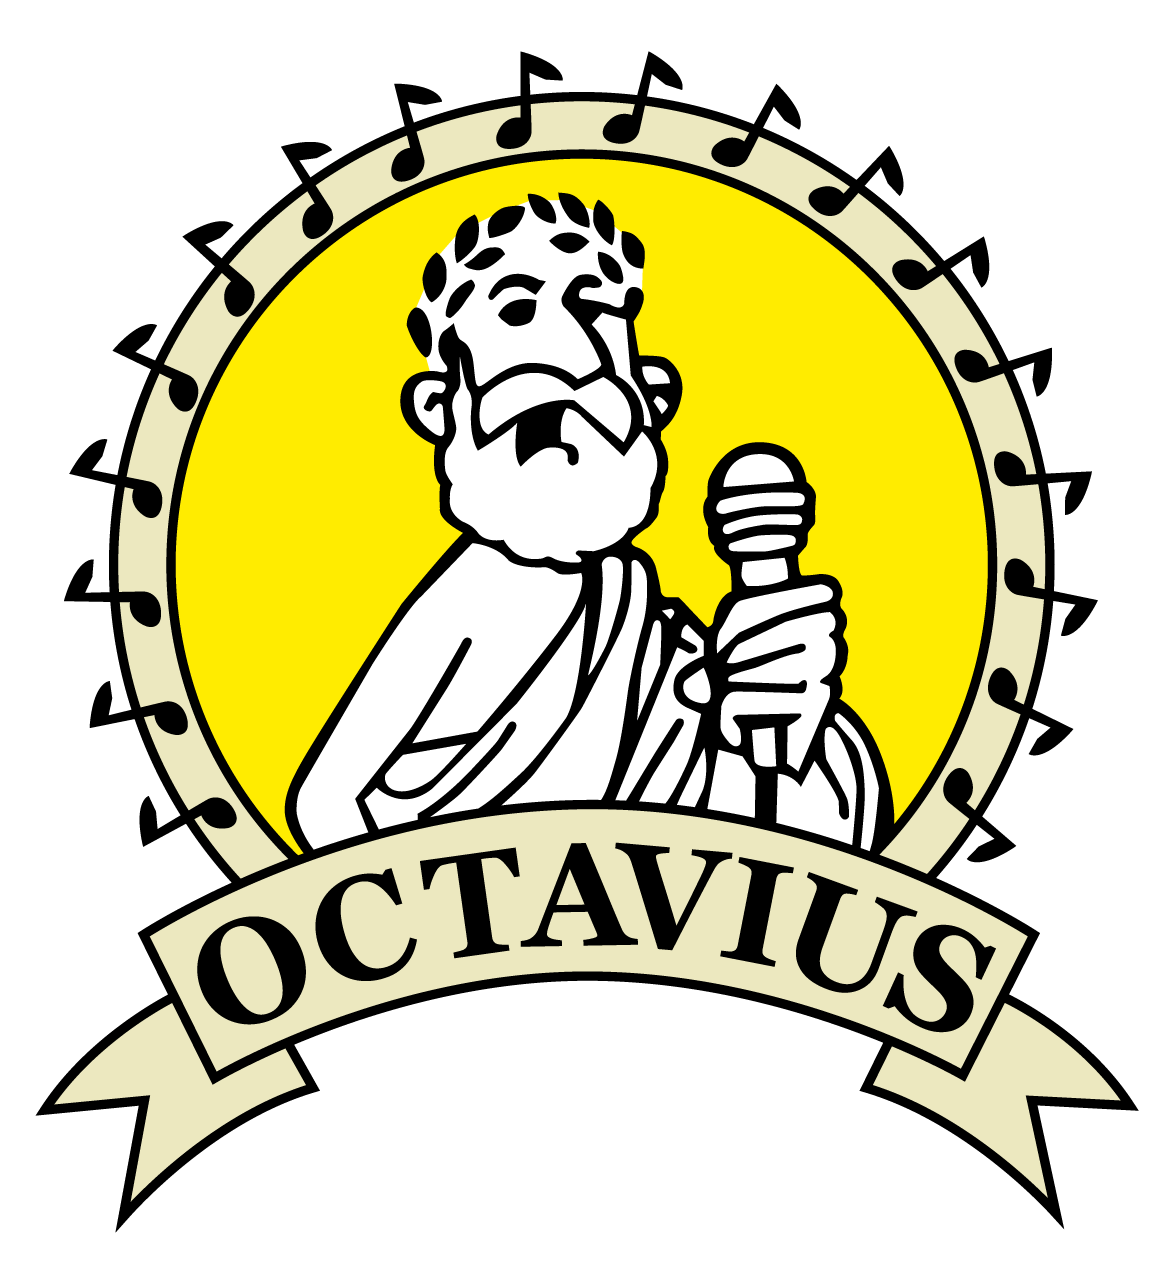 Octavius Studios